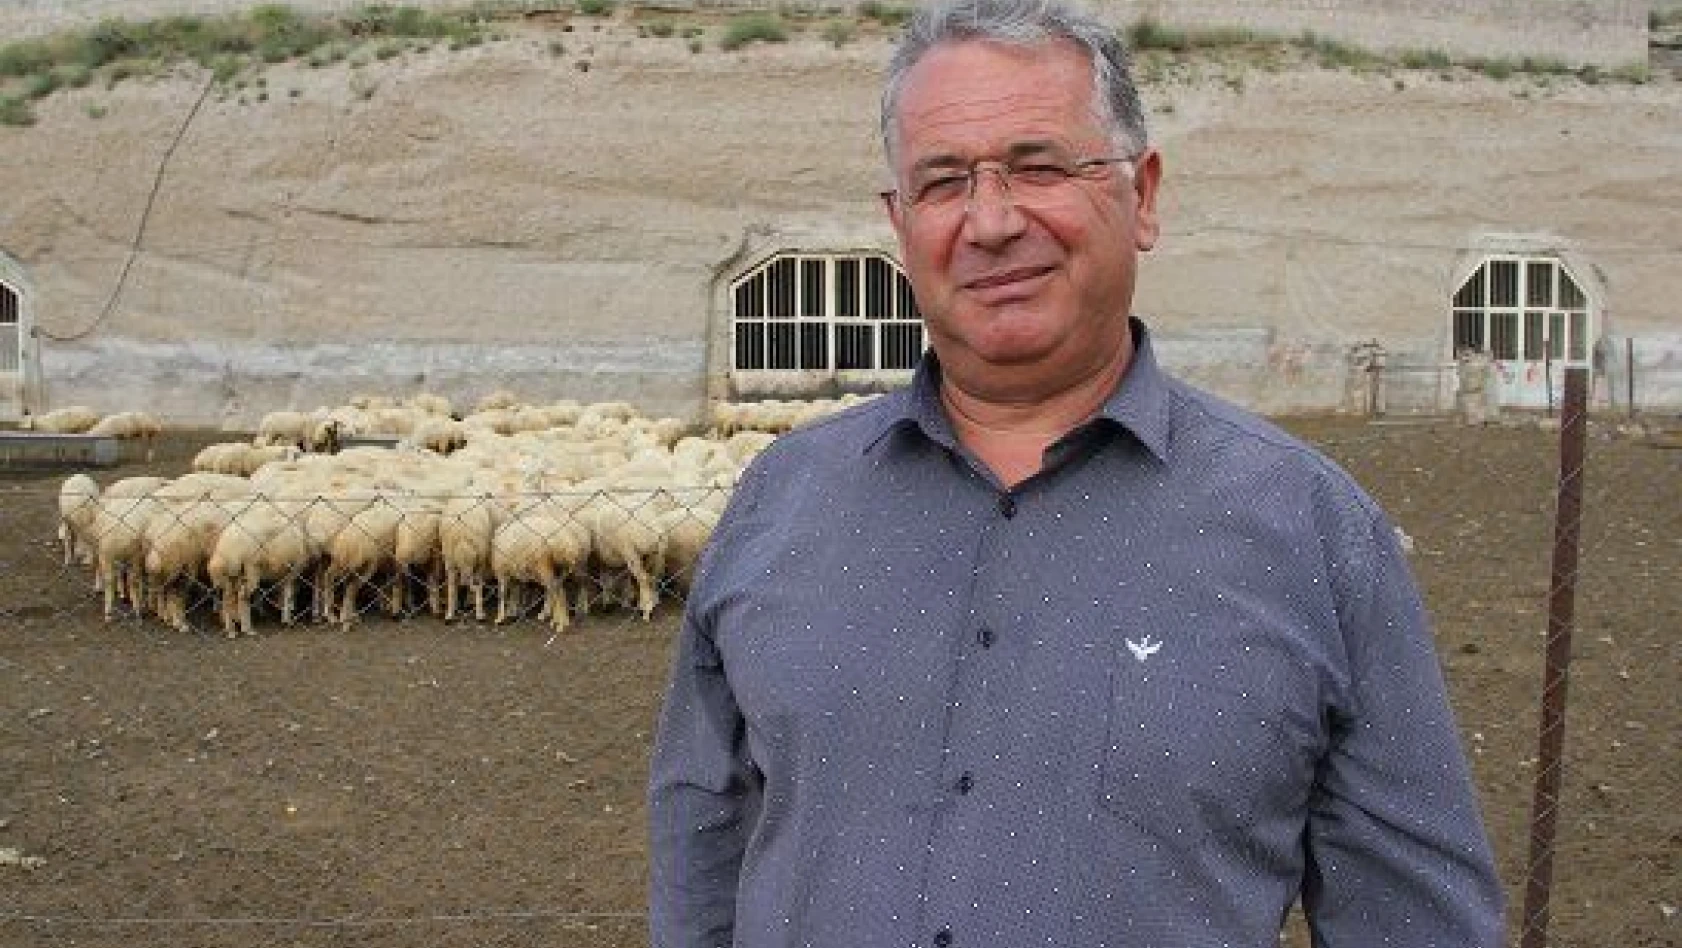 Hobi olarak başladı, 4 koyunu şimdi 1600 oldu